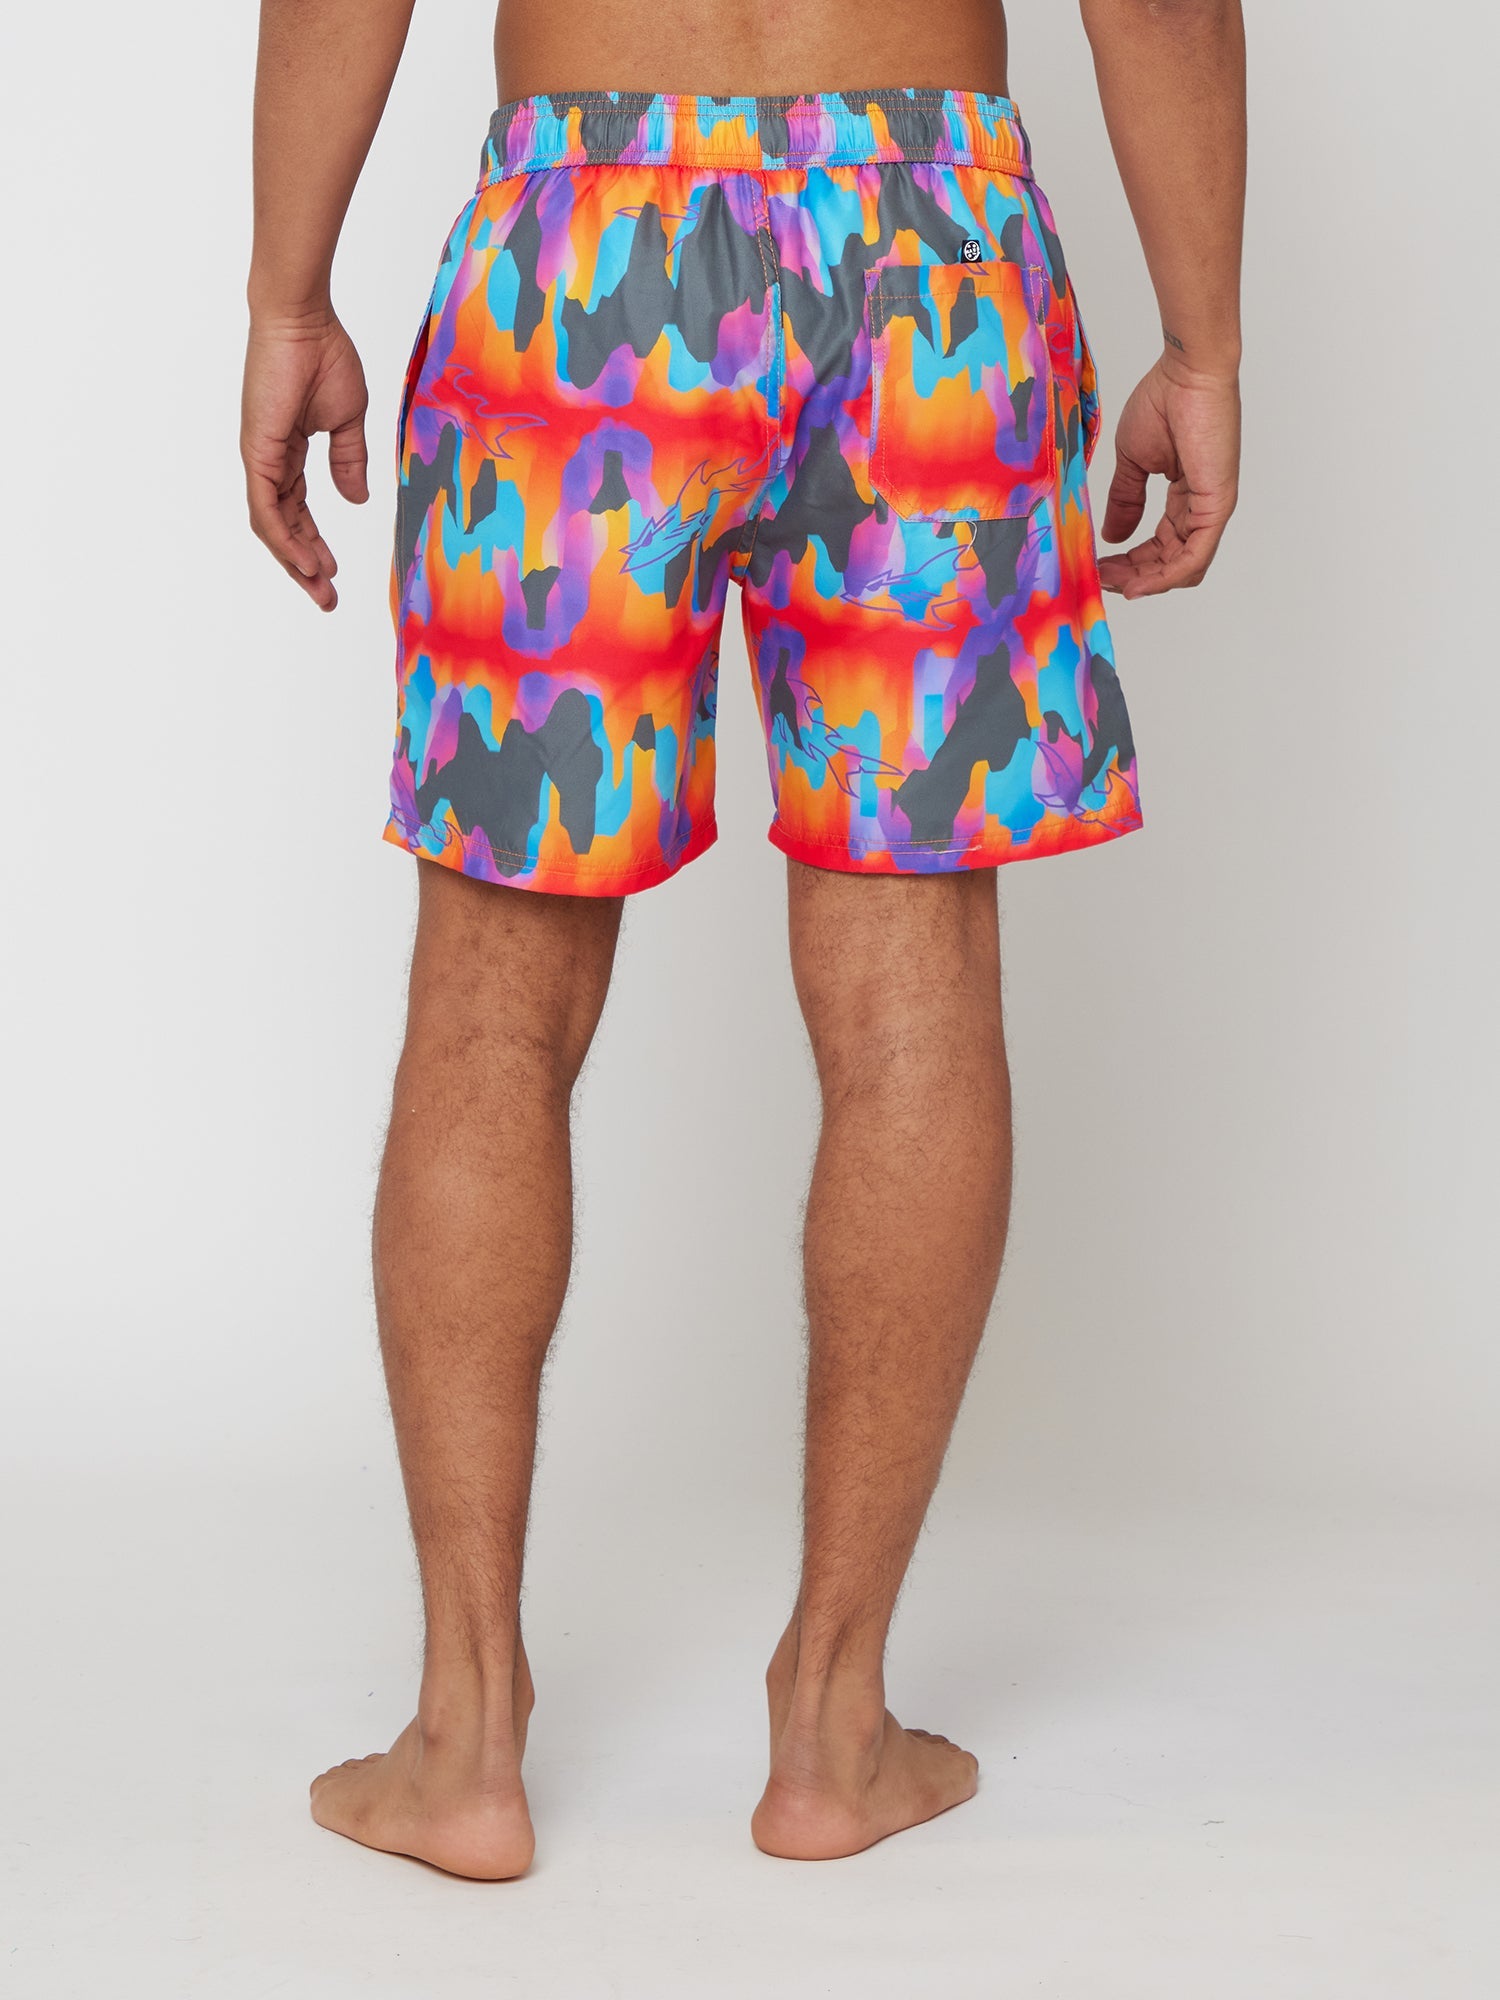 Pantalones cortos de piscina de erupción volcánica